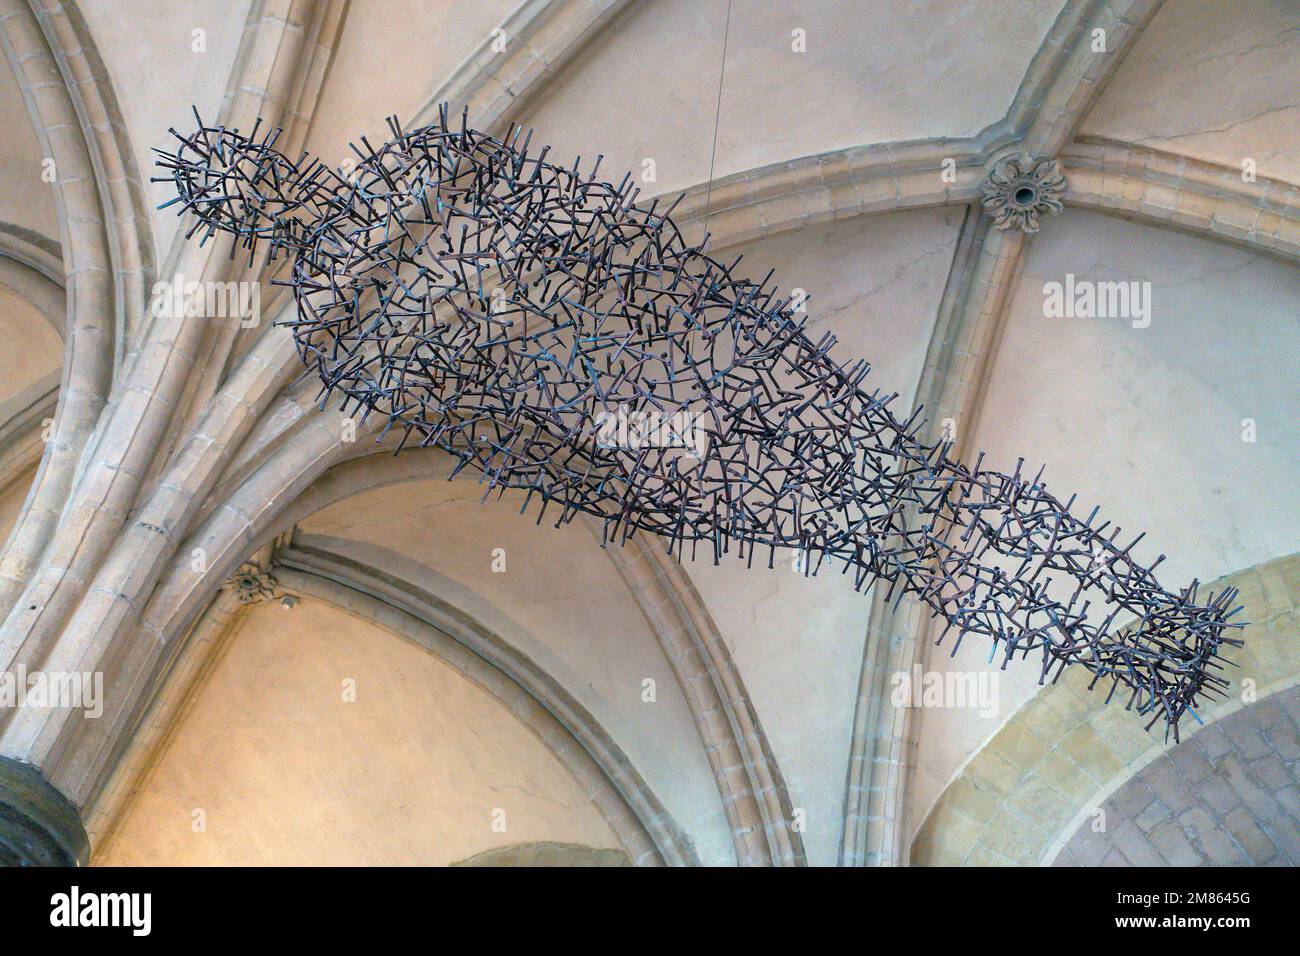 Transport im Antony Gormley. Transport ist eine Skulptur von Antony Gormley in der Krypta der Kathedrale von Canterbury in Kent. Installiert in 2011. Es ist aus Stockfoto